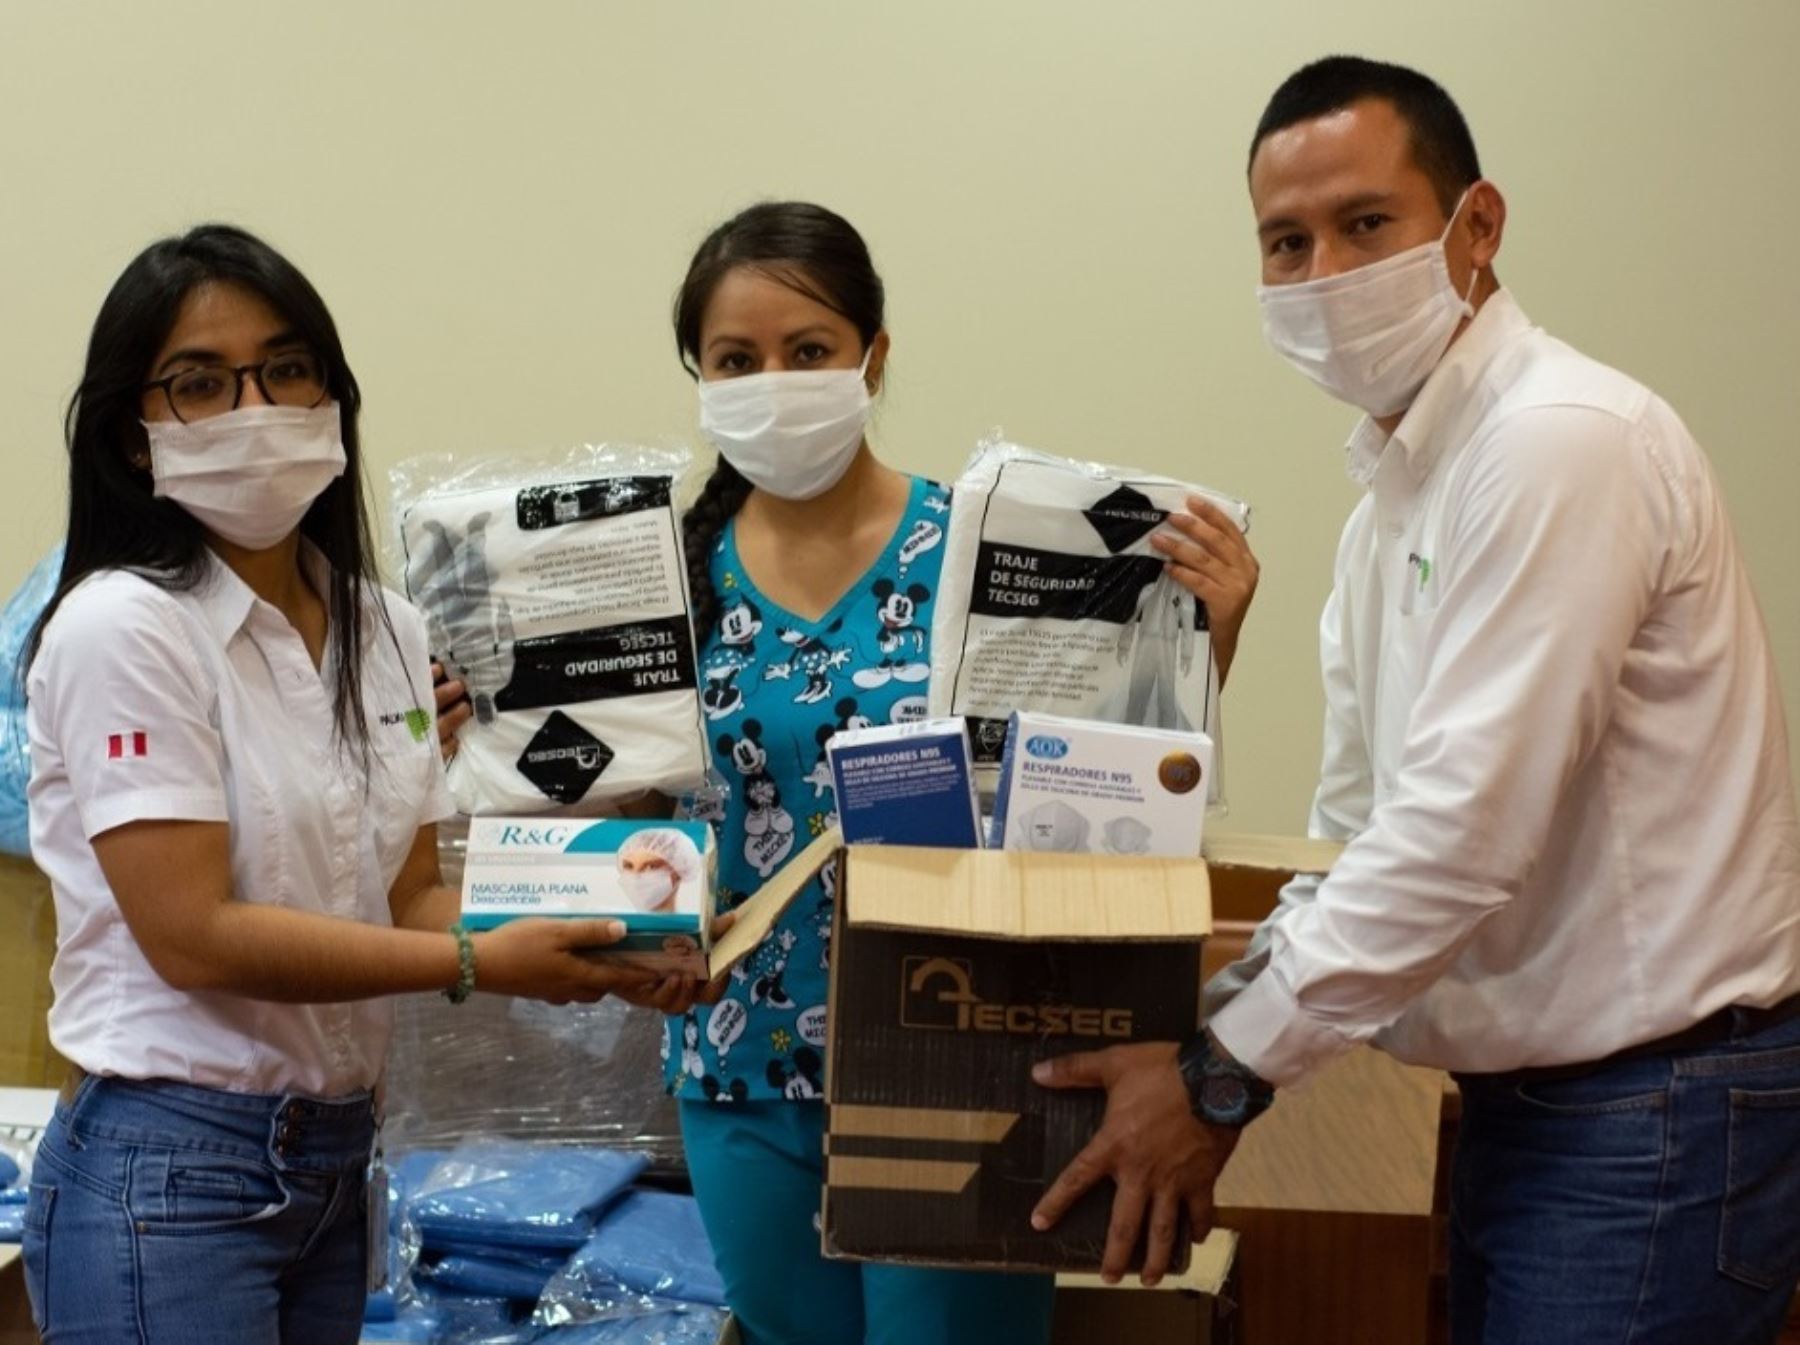 Organizaciones civiles como Médicos sin fronteras y el grupo Palmas donaron equipos biomédicos, medicamentos, equipos de protección personal a hospitales de Tarapoto y Tocache ANDINA/Difusión